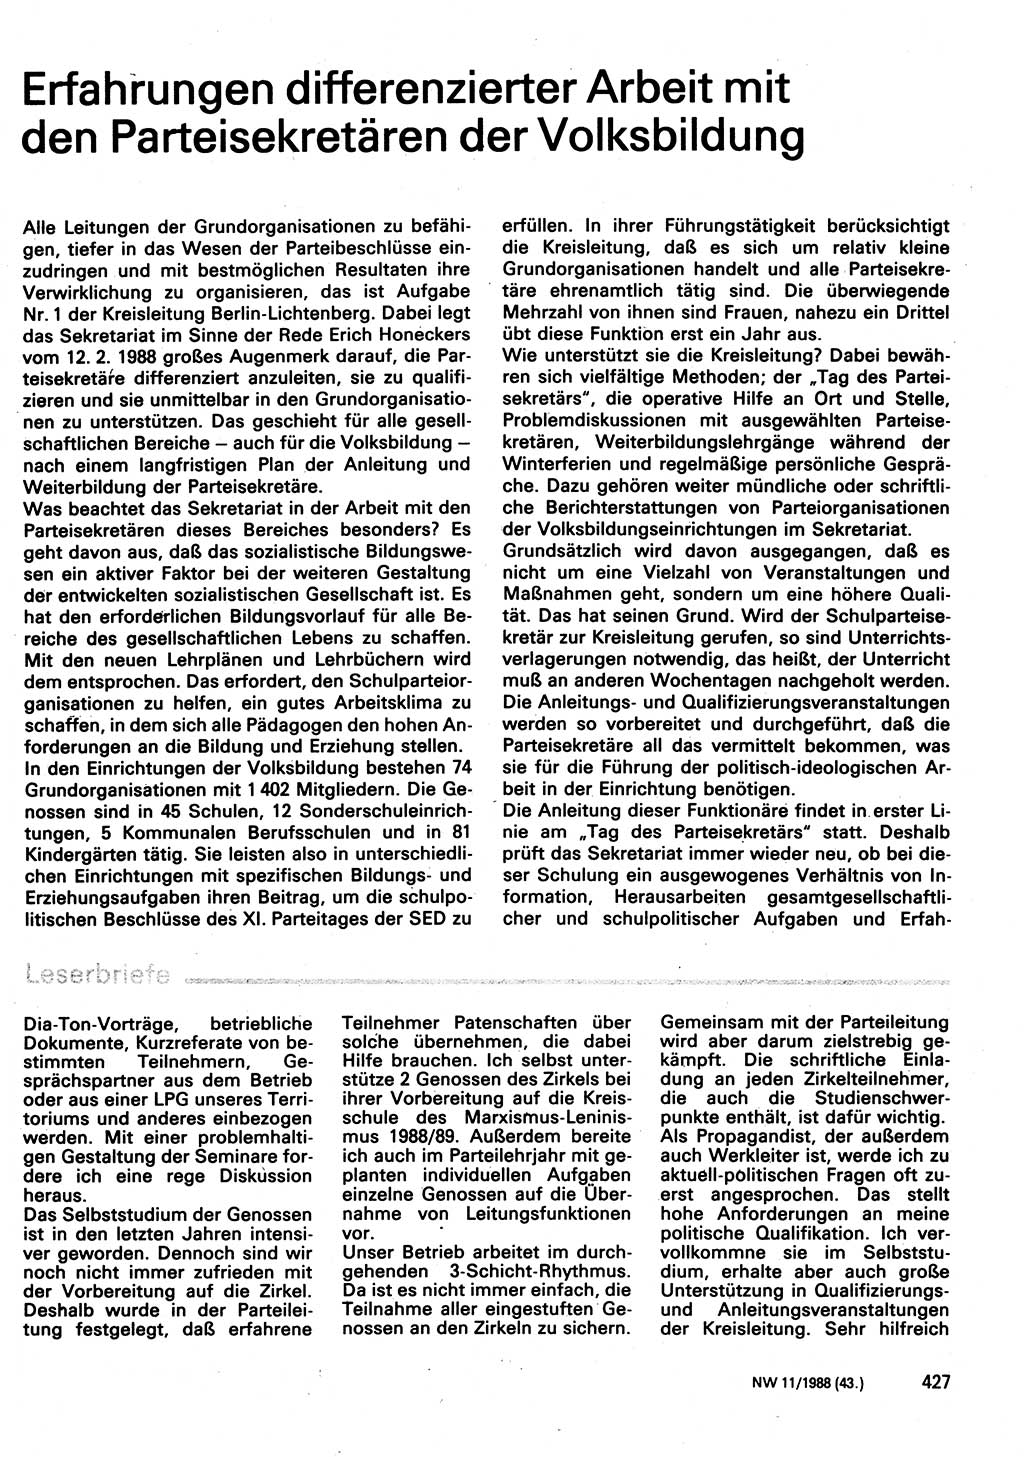 Neuer Weg (NW), Organ des Zentralkomitees (ZK) der SED (Sozialistische Einheitspartei Deutschlands) für Fragen des Parteilebens, 43. Jahrgang [Deutsche Demokratische Republik (DDR)] 1988, Seite 427 (NW ZK SED DDR 1988, S. 427)